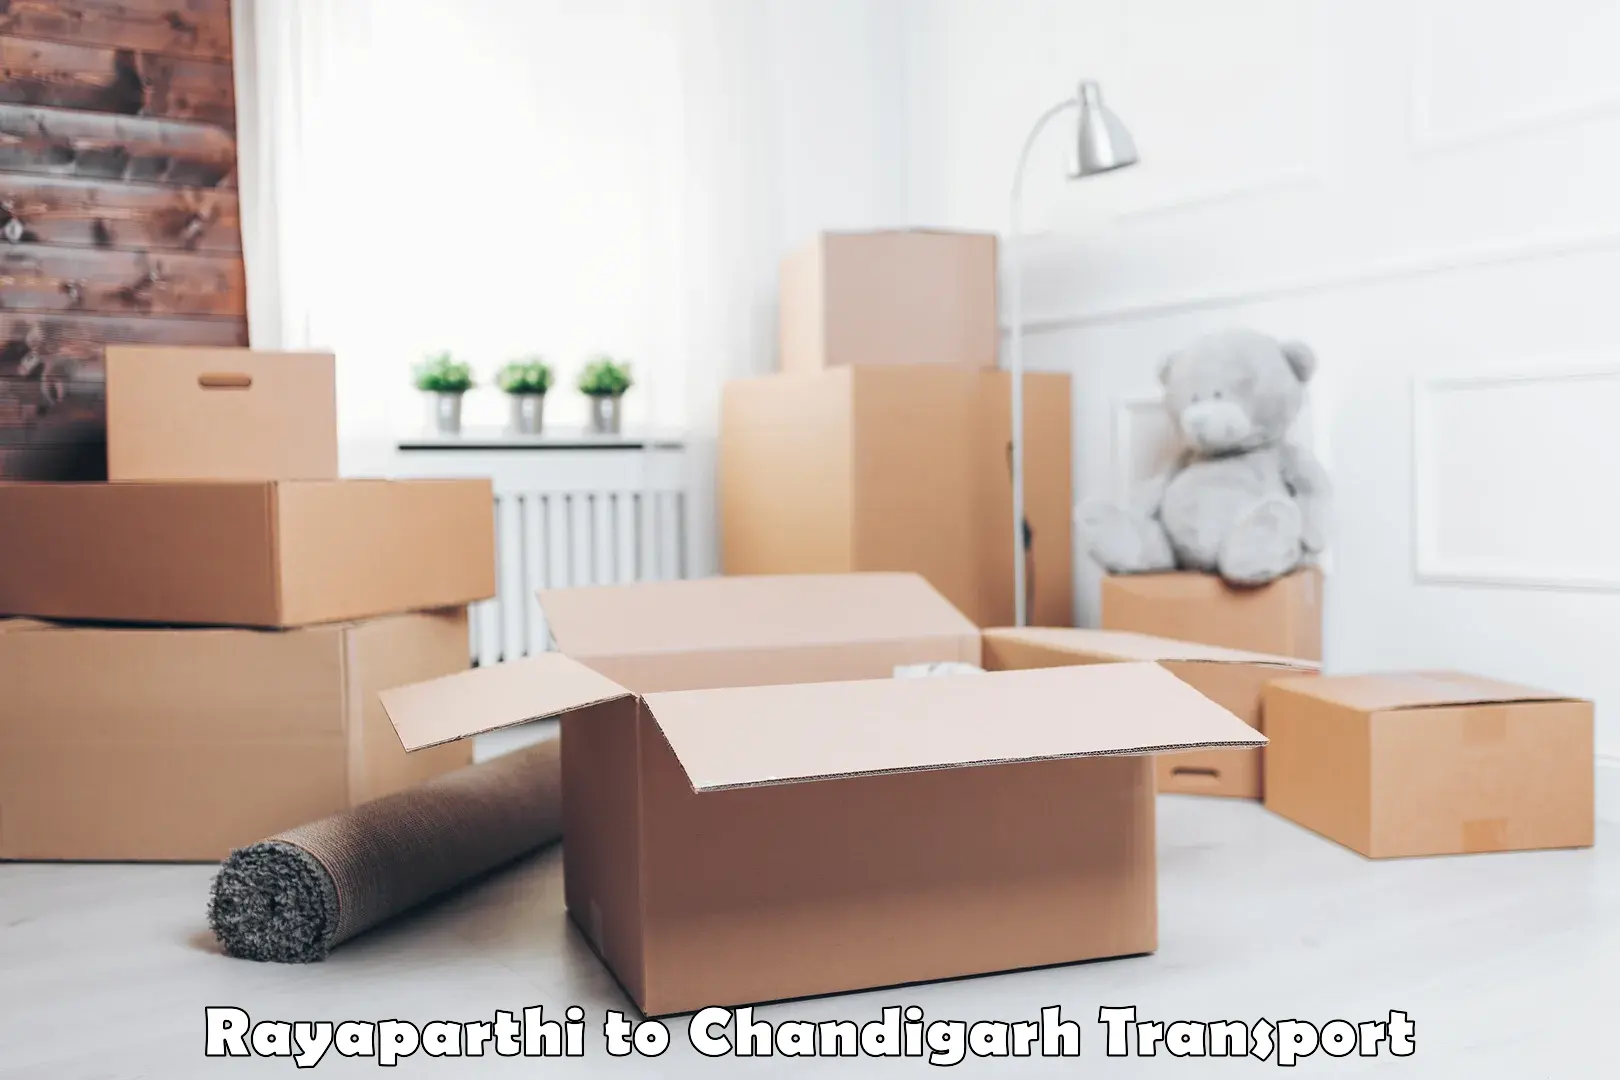 Online transport Rayaparthi to Chandigarh